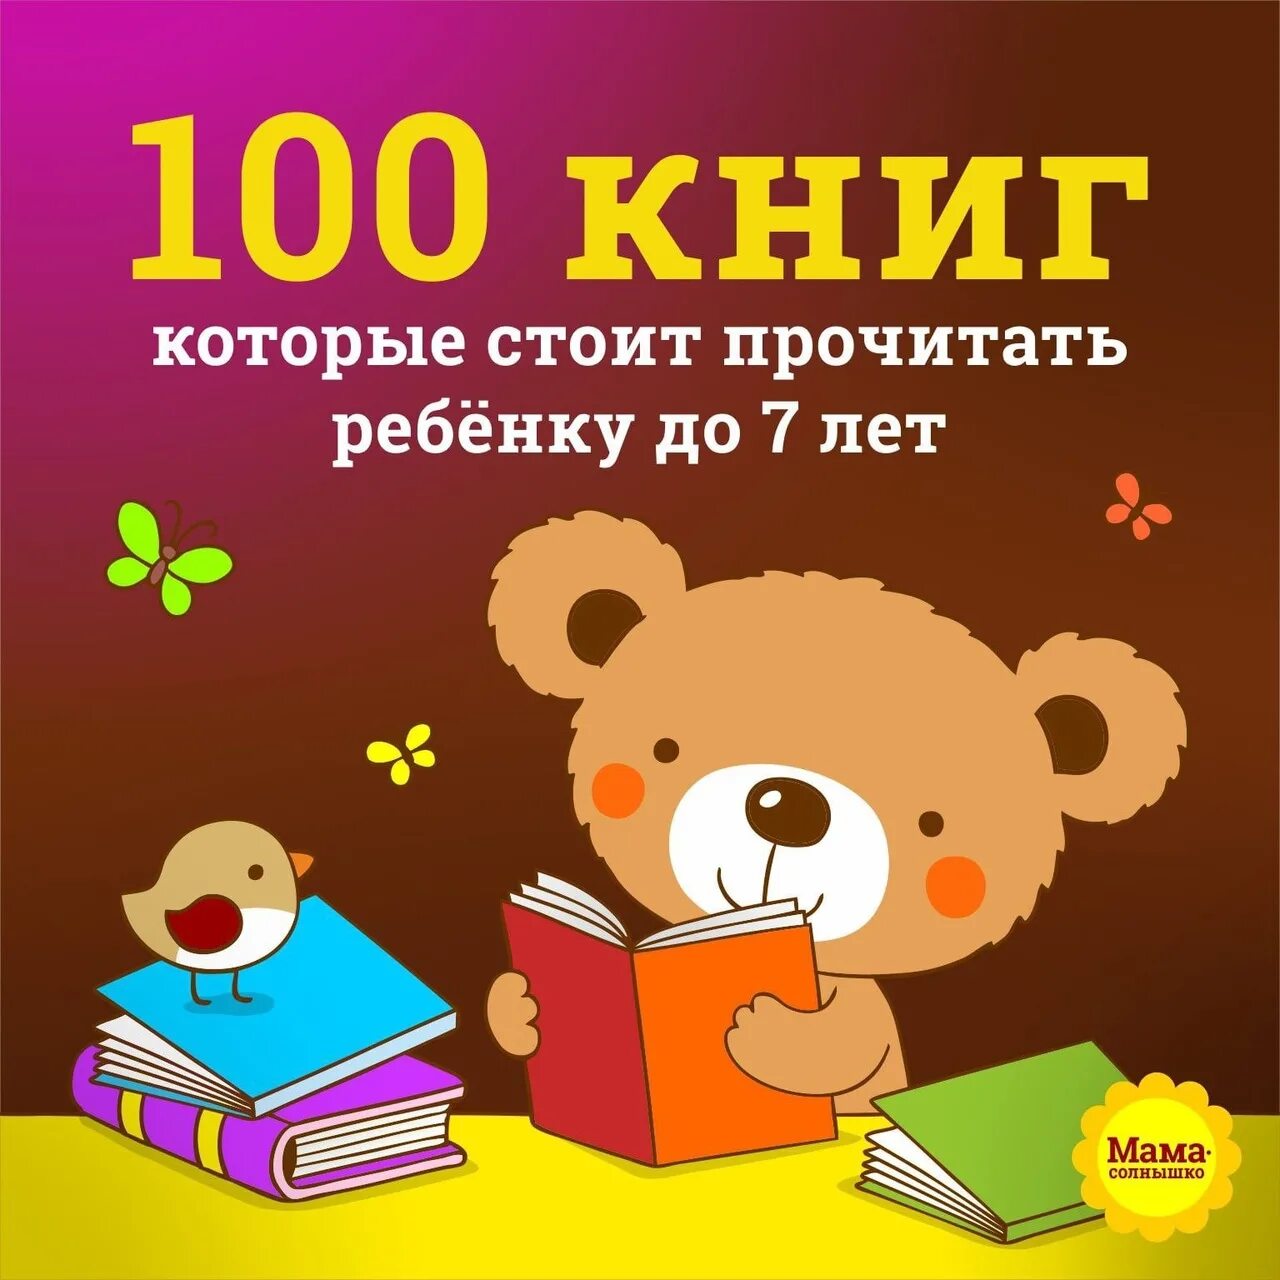 Книги для ребенка 10 11. Детские книги. Книги для детей. Книги для детей 7 лет. Книги для детского чтения.